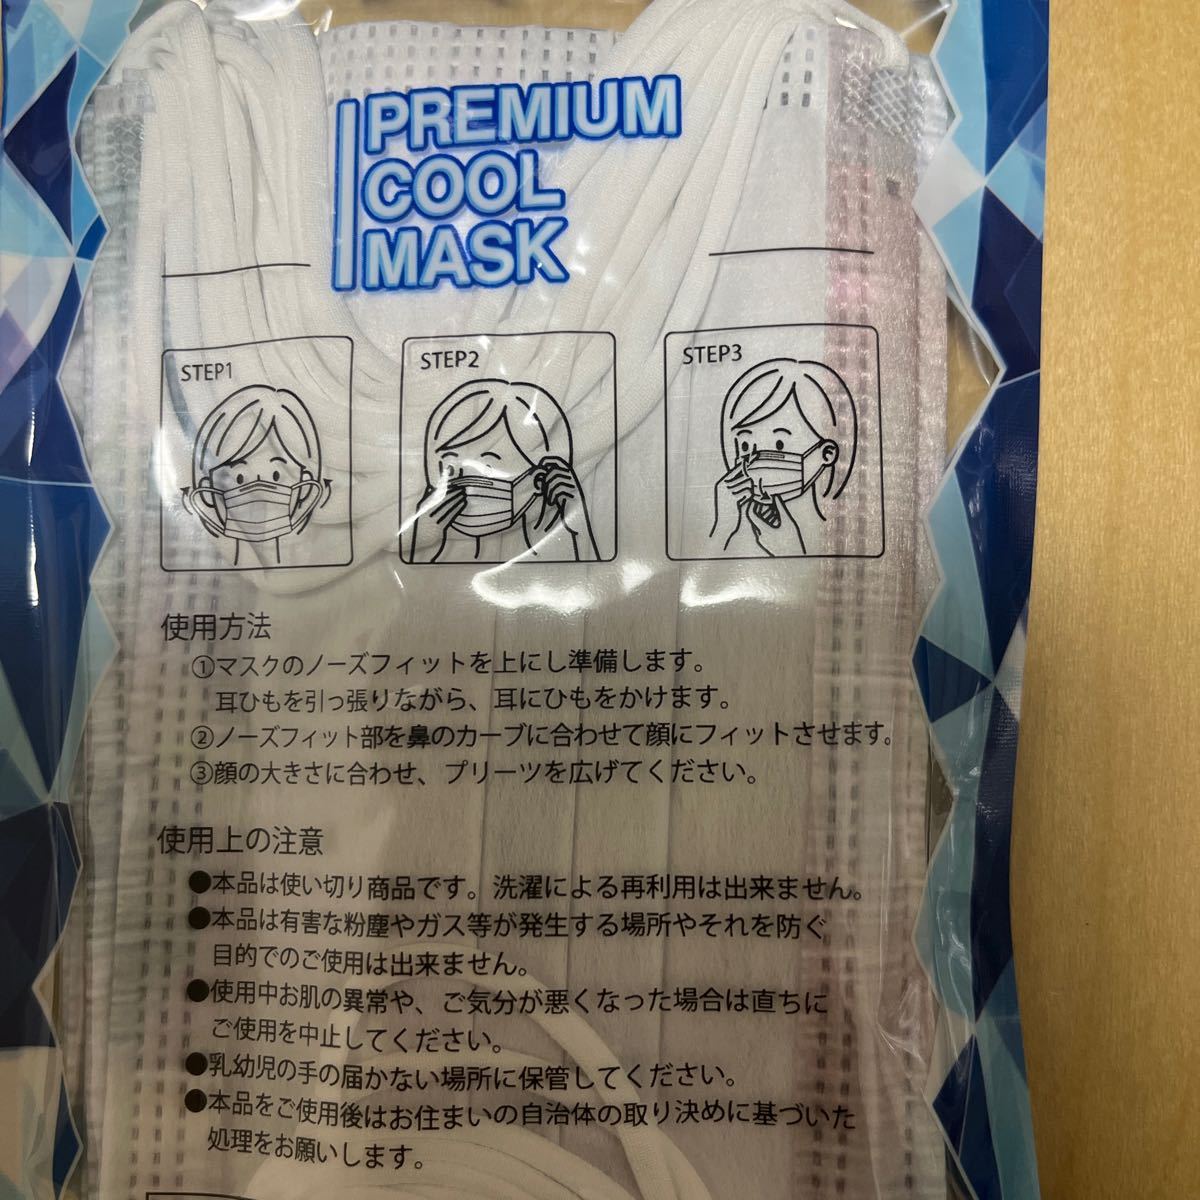  нетканый материал маска рисунок предмет контакт охлаждающий нетканый материал маска premium прохладный маска 